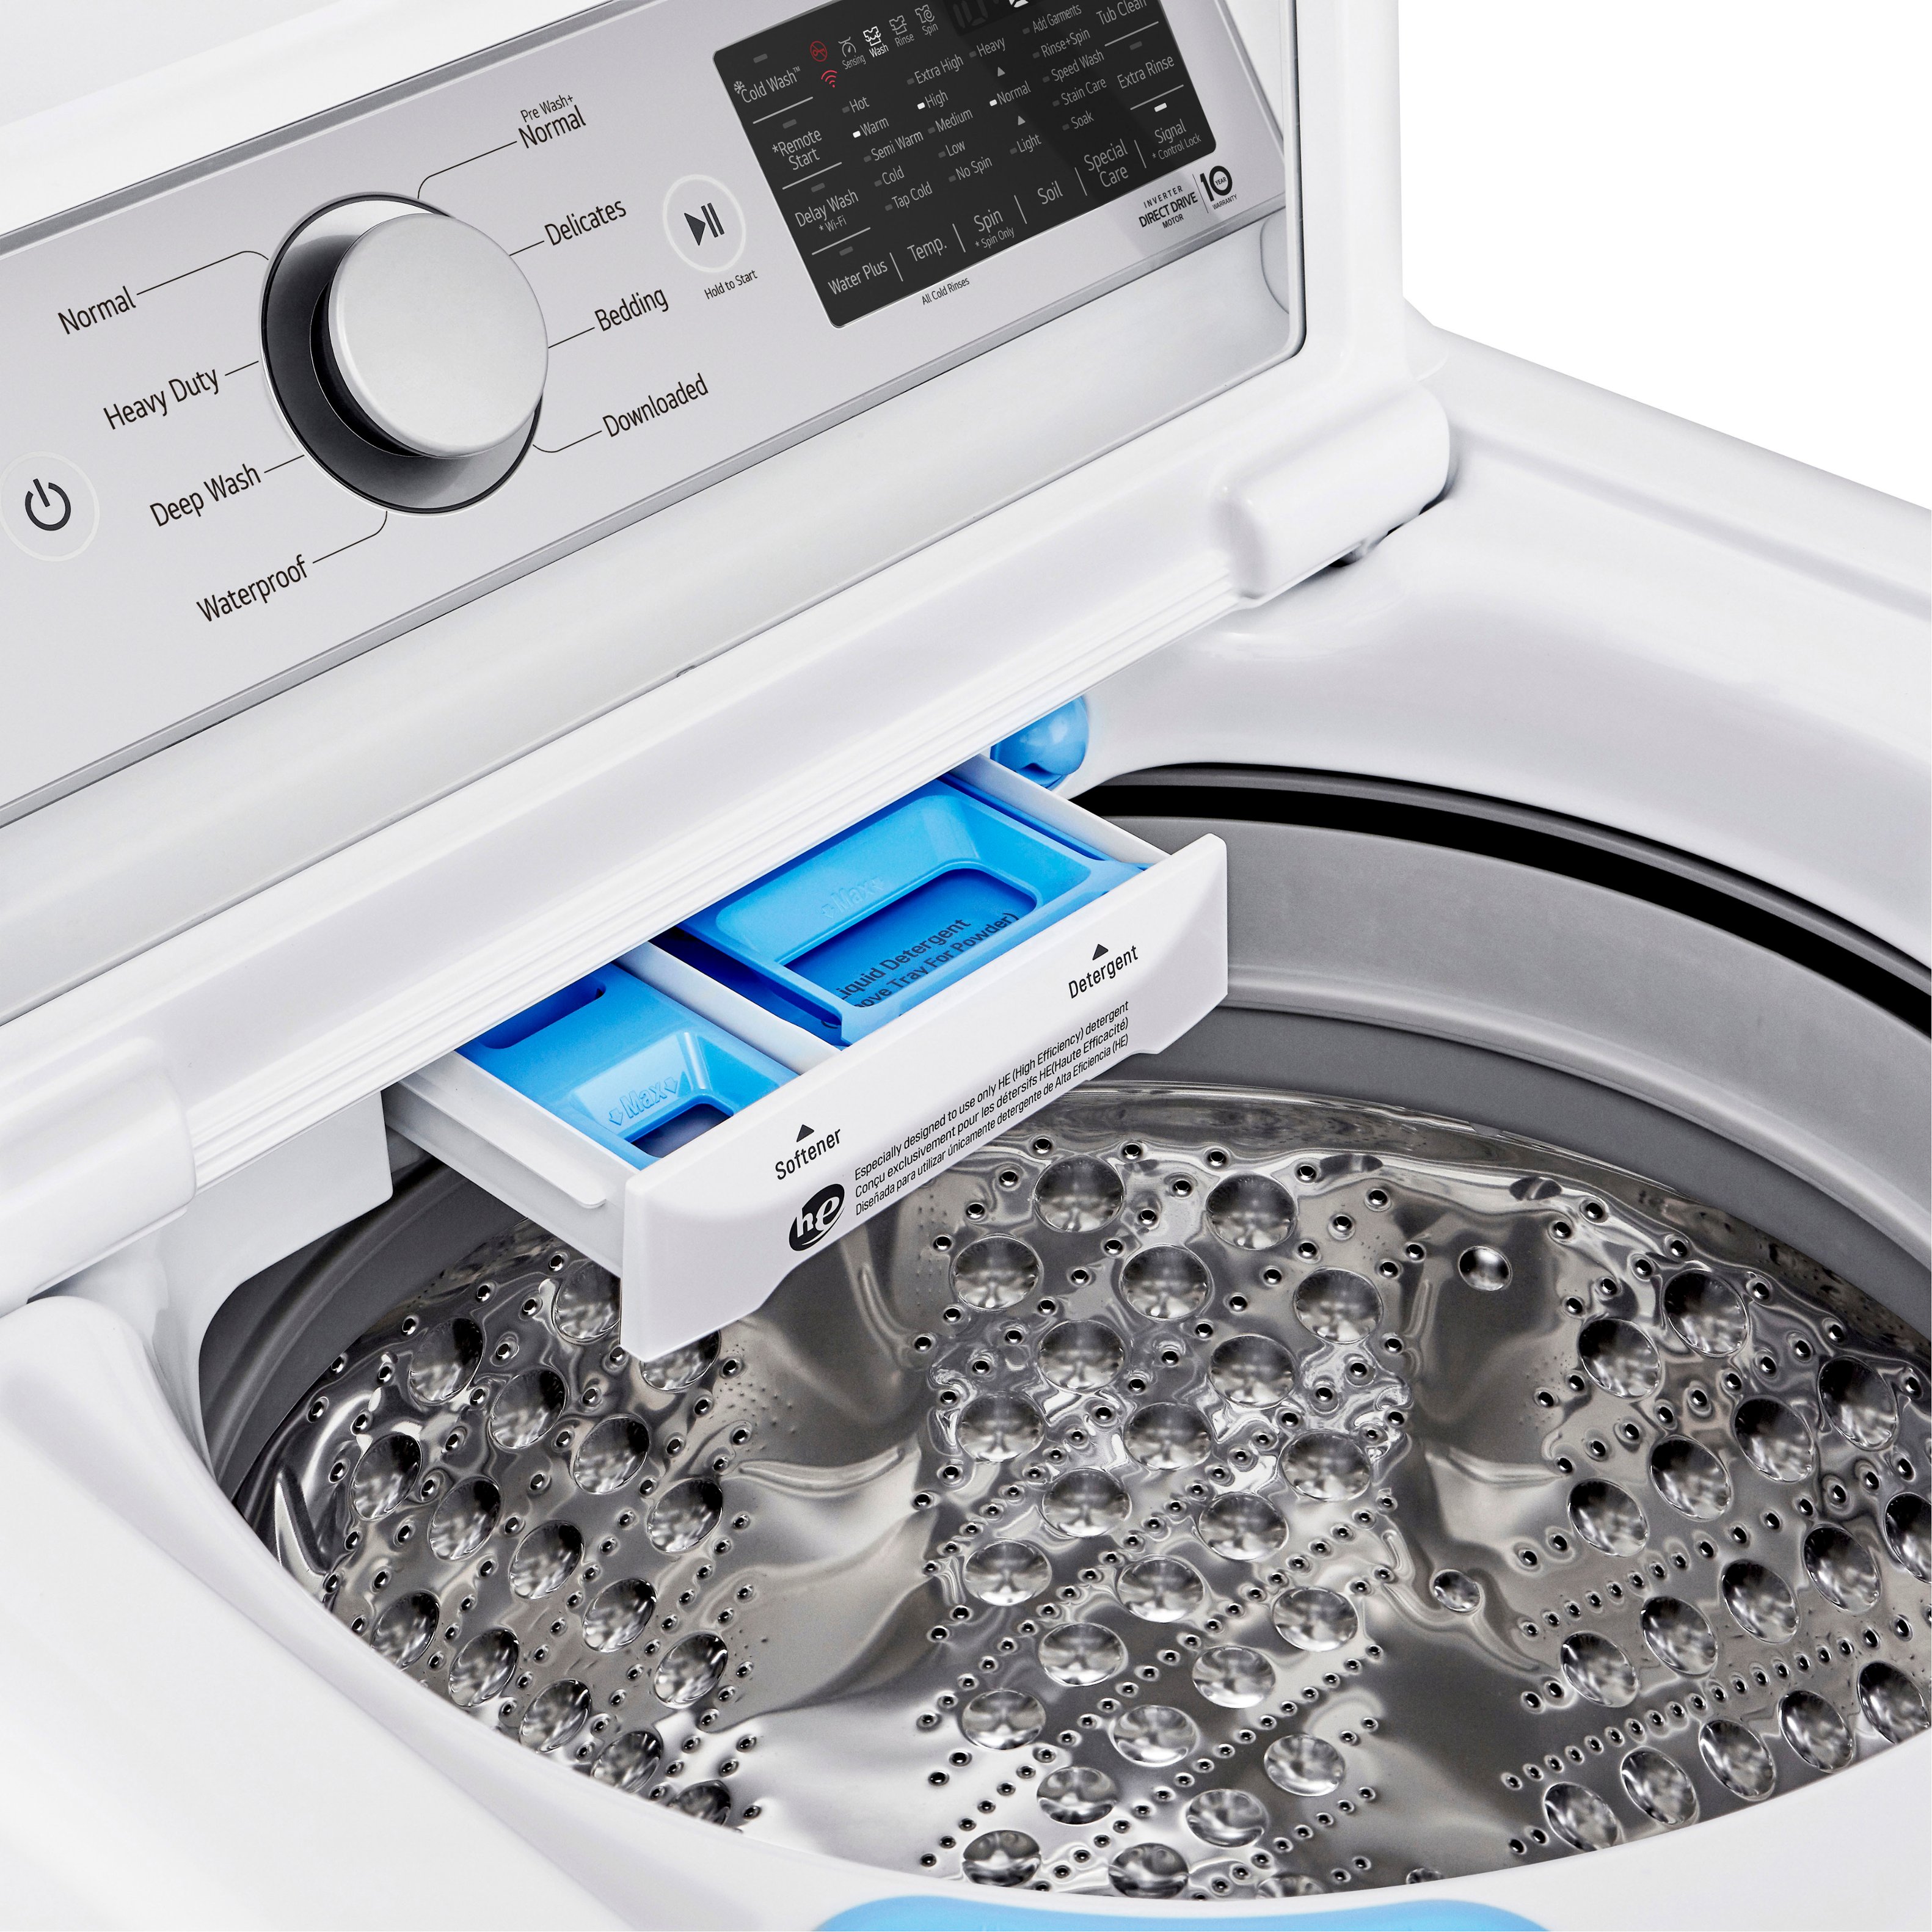 LG Coretech, Washing Machine